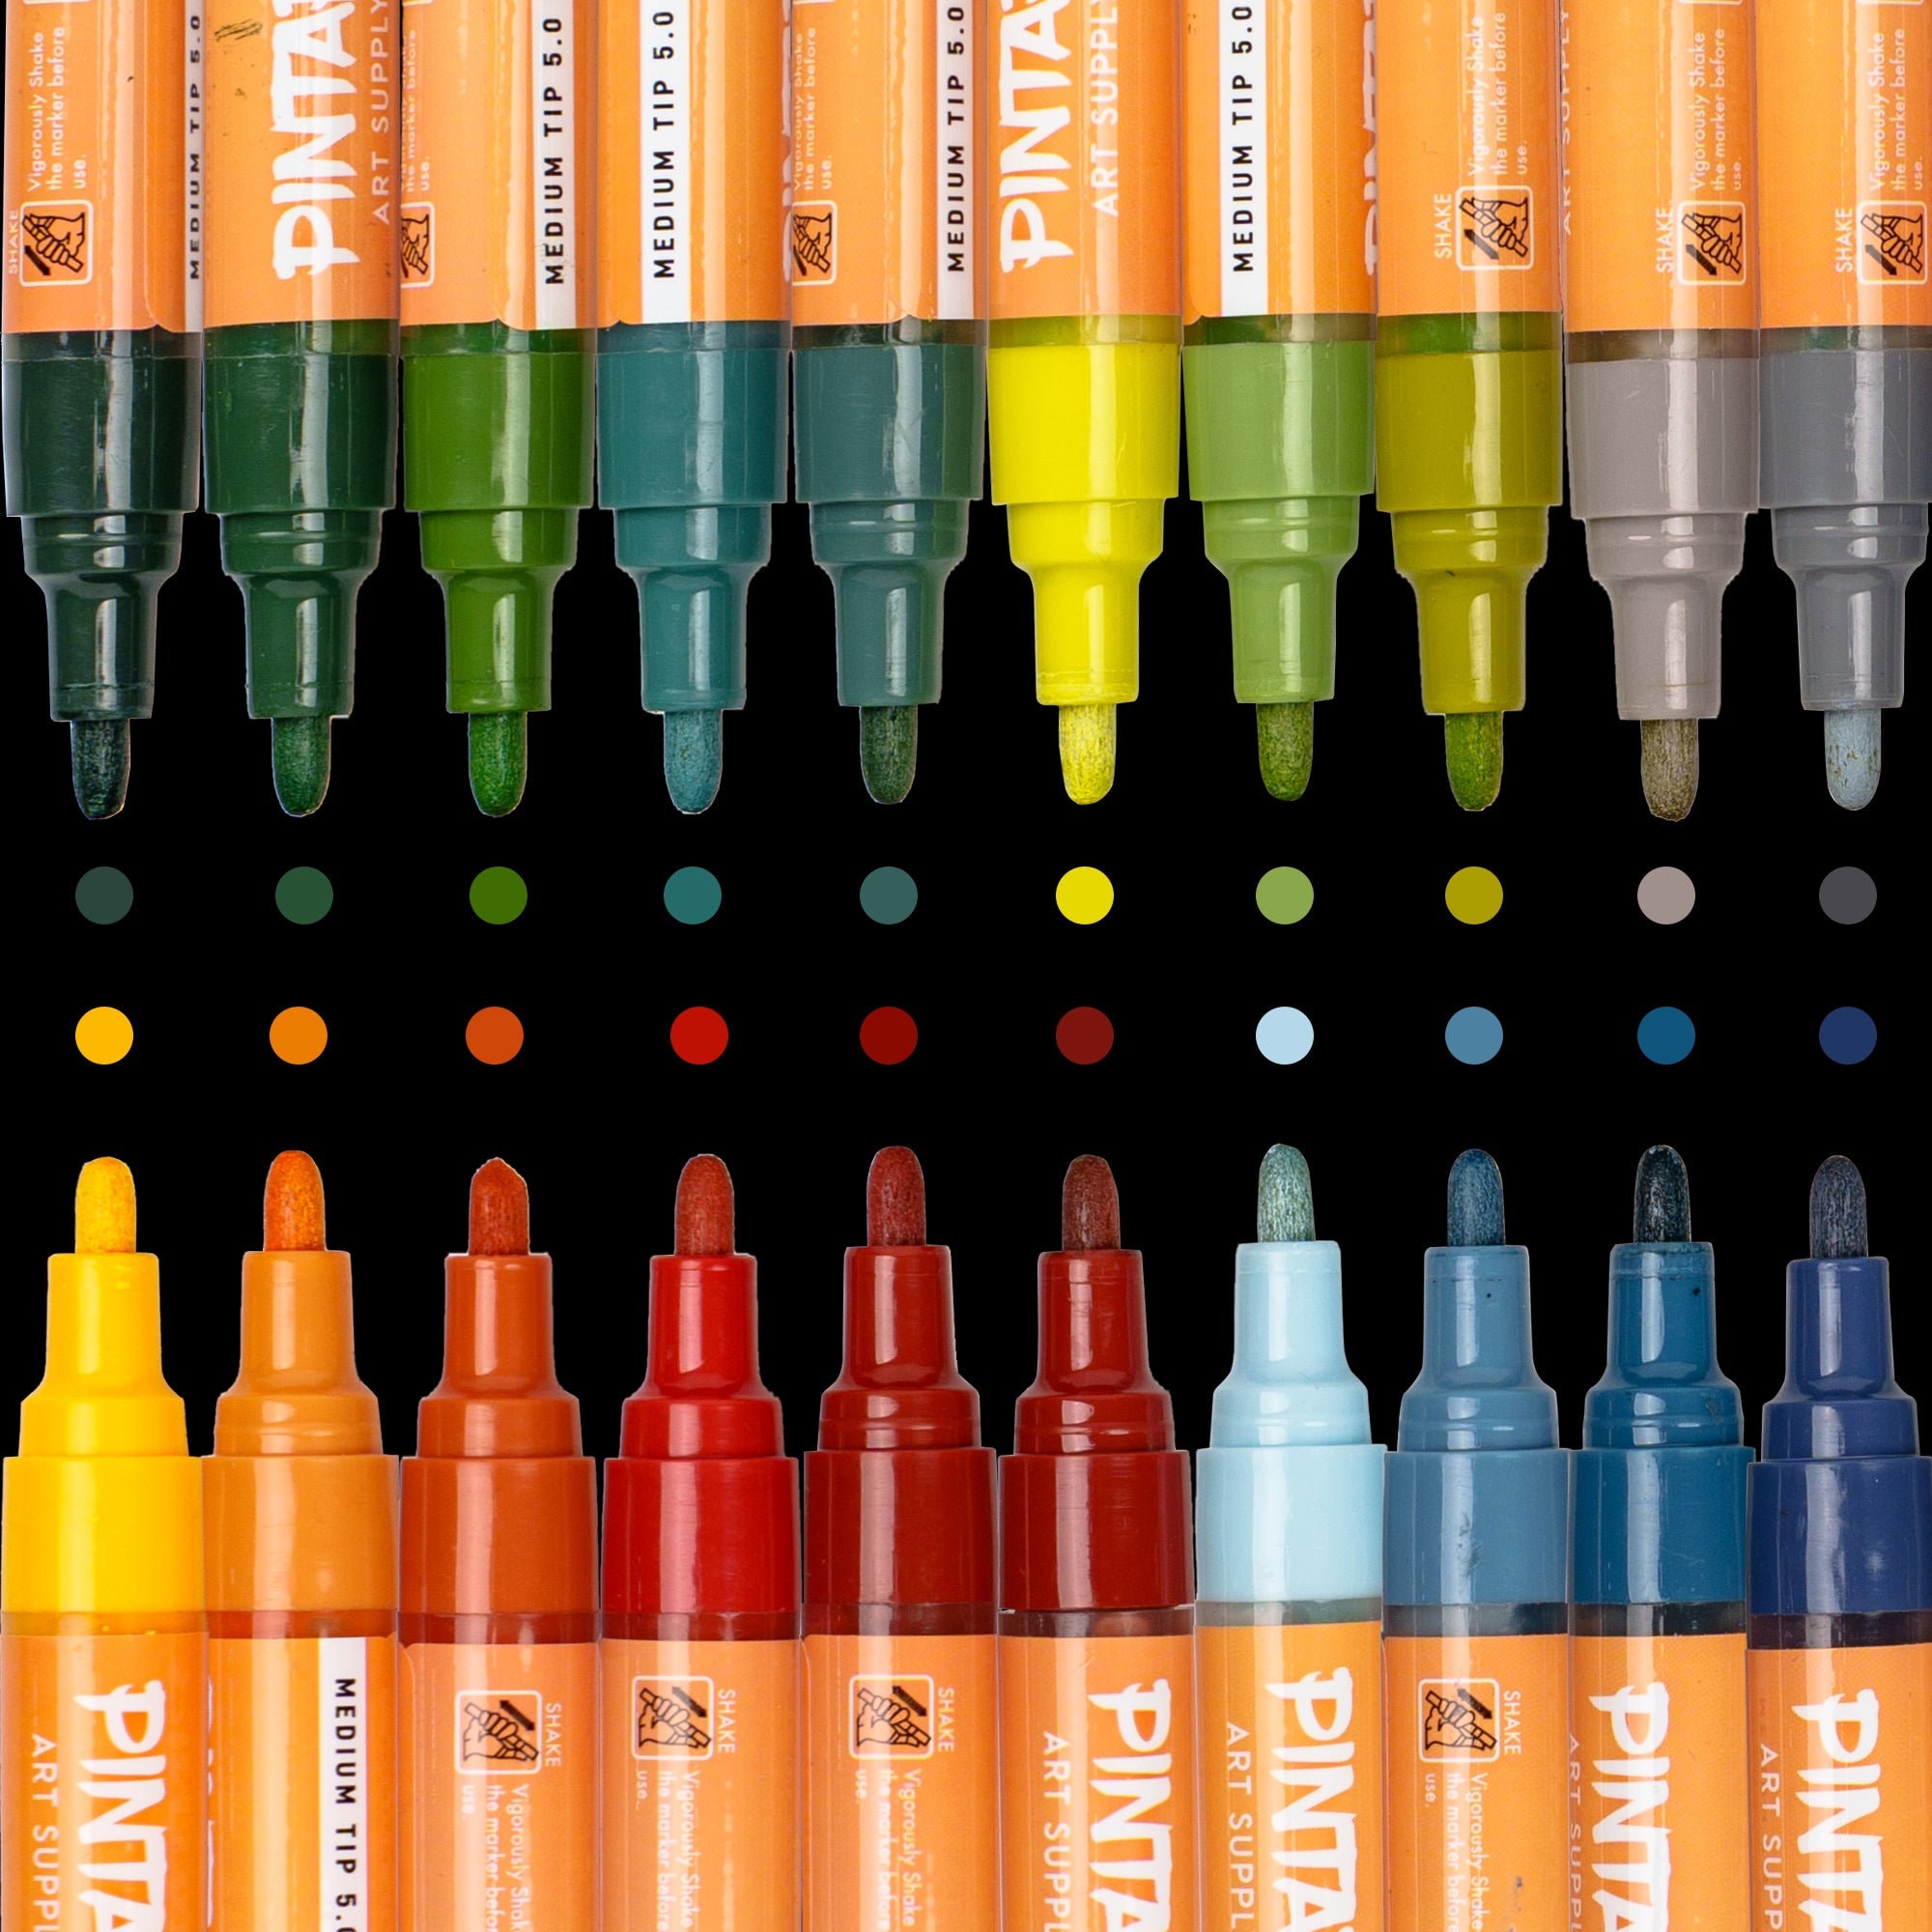 1x Edding 780 Paint Marker Pen Glass Metal Plastic Bullet Tip 0.8